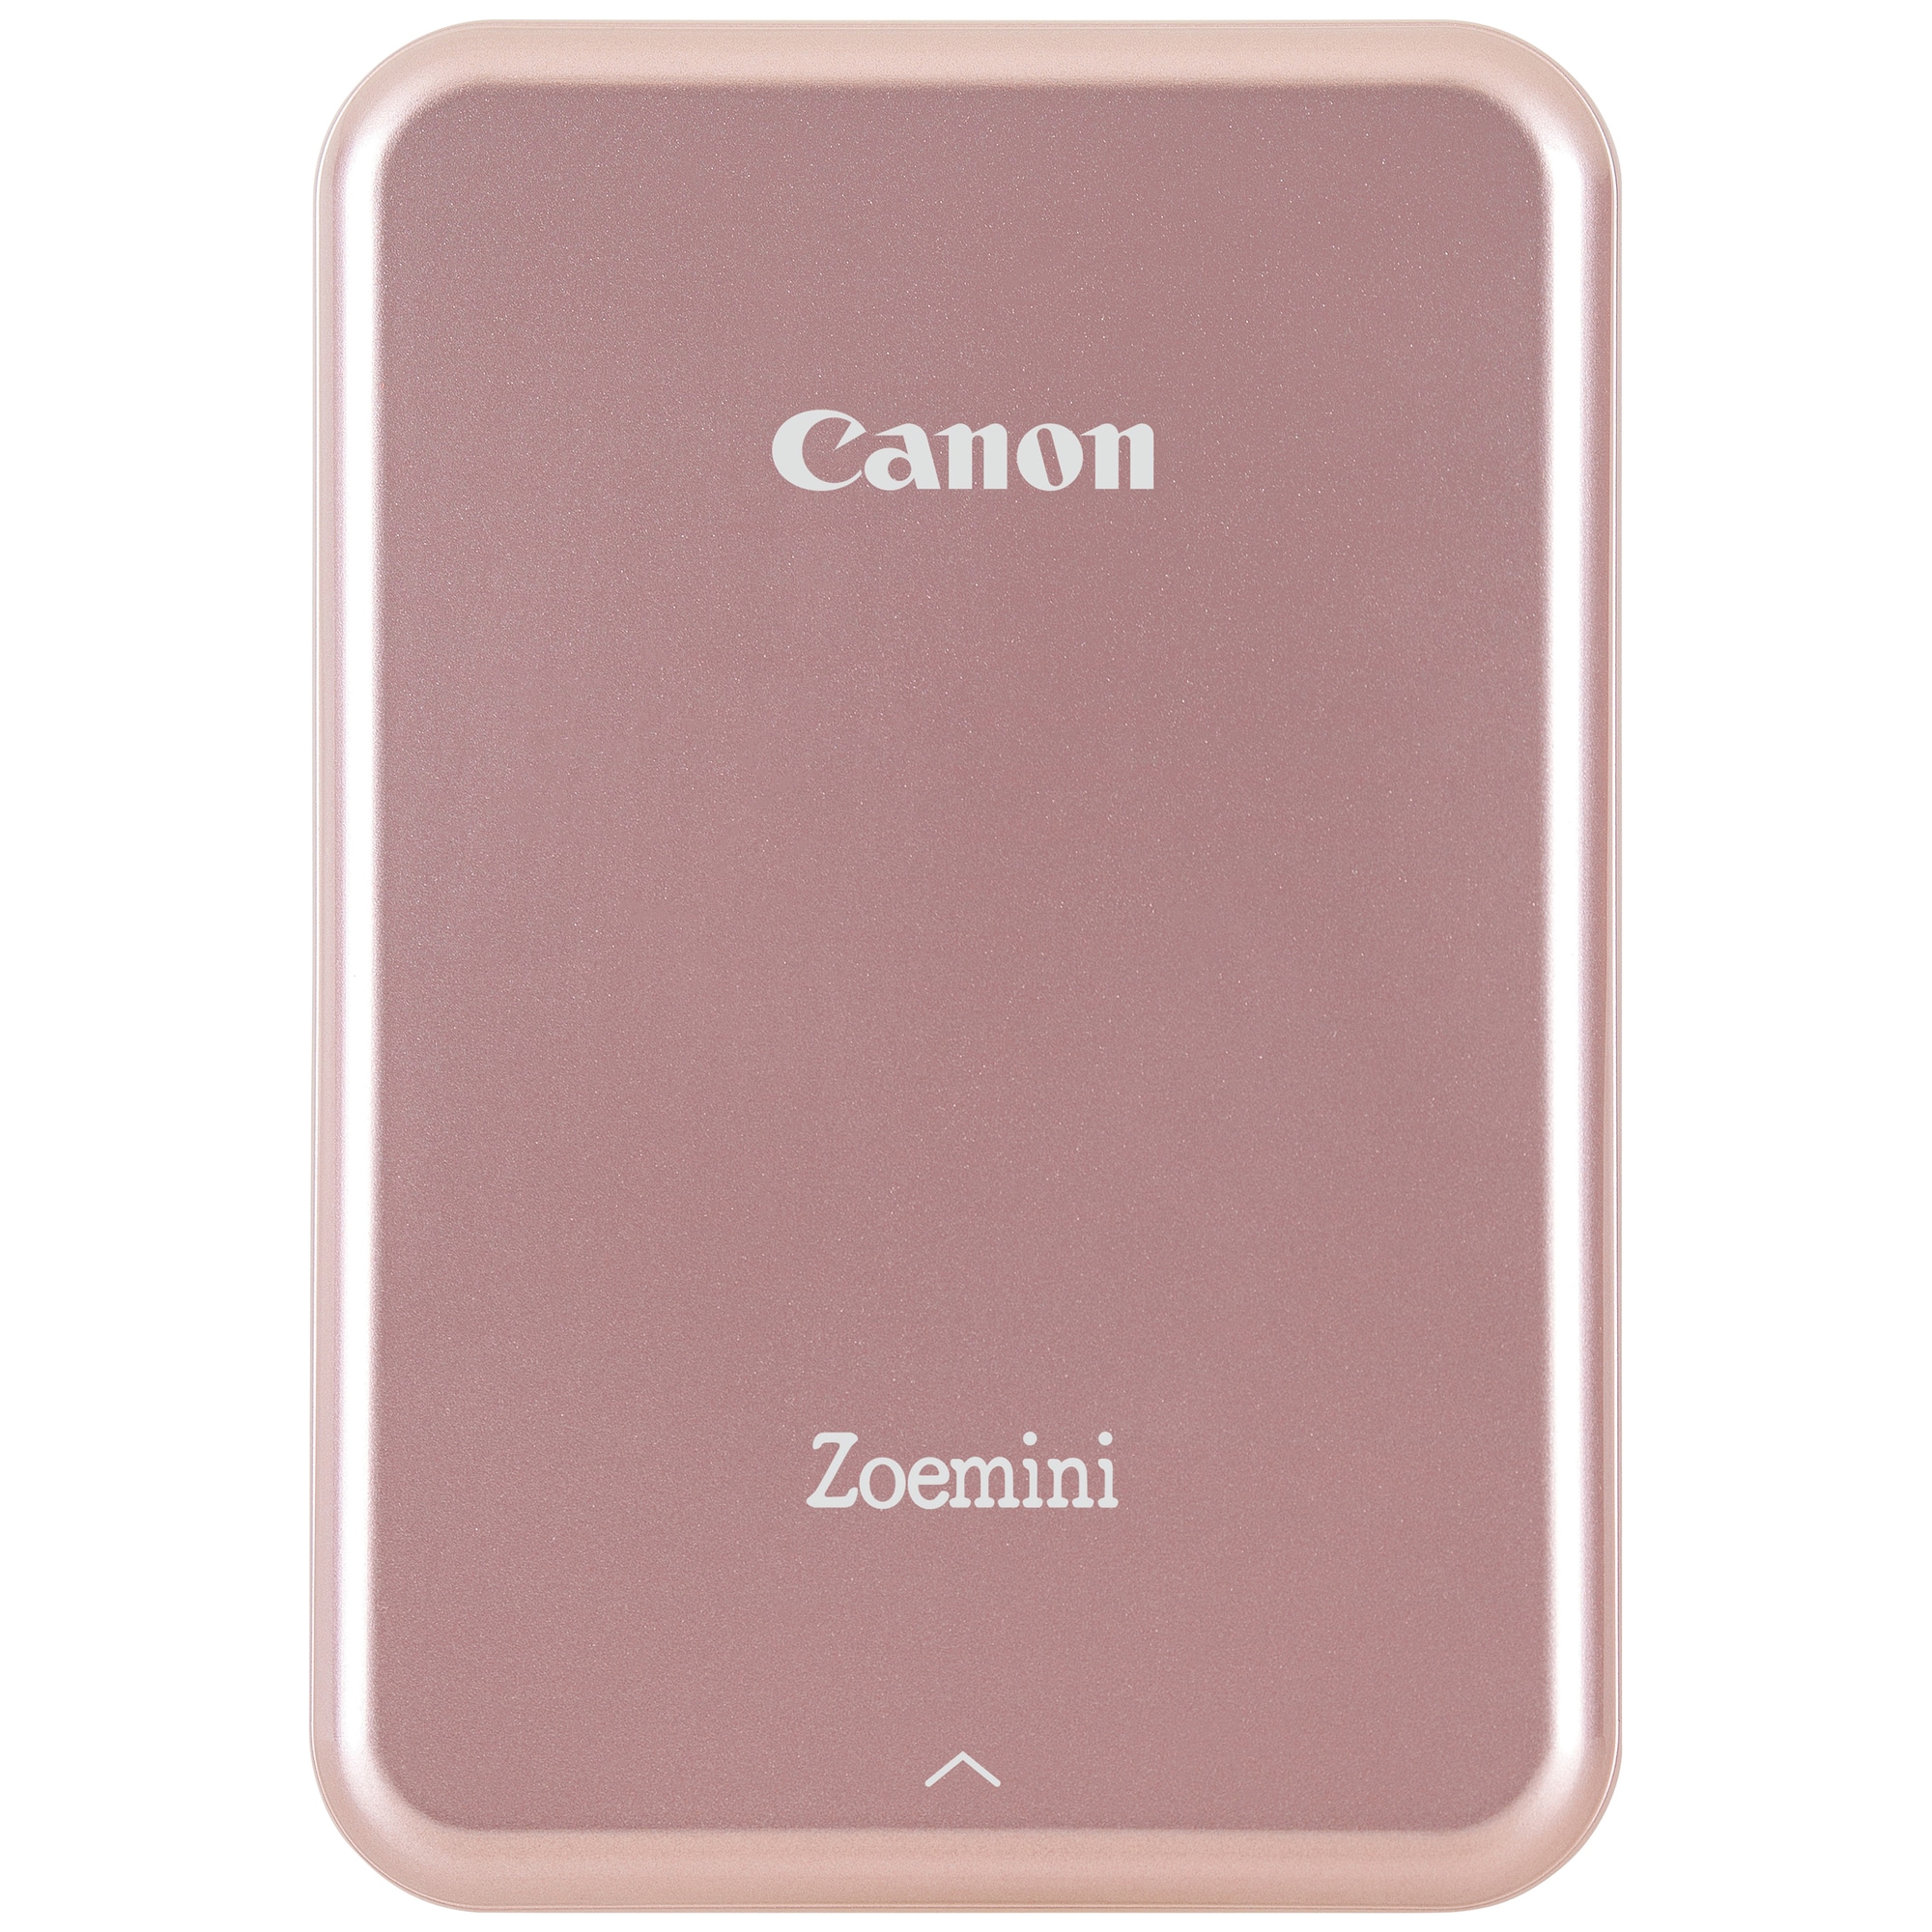 Canon Zoemini mobil fotoskriver (gull/hvit) - Elkjøp